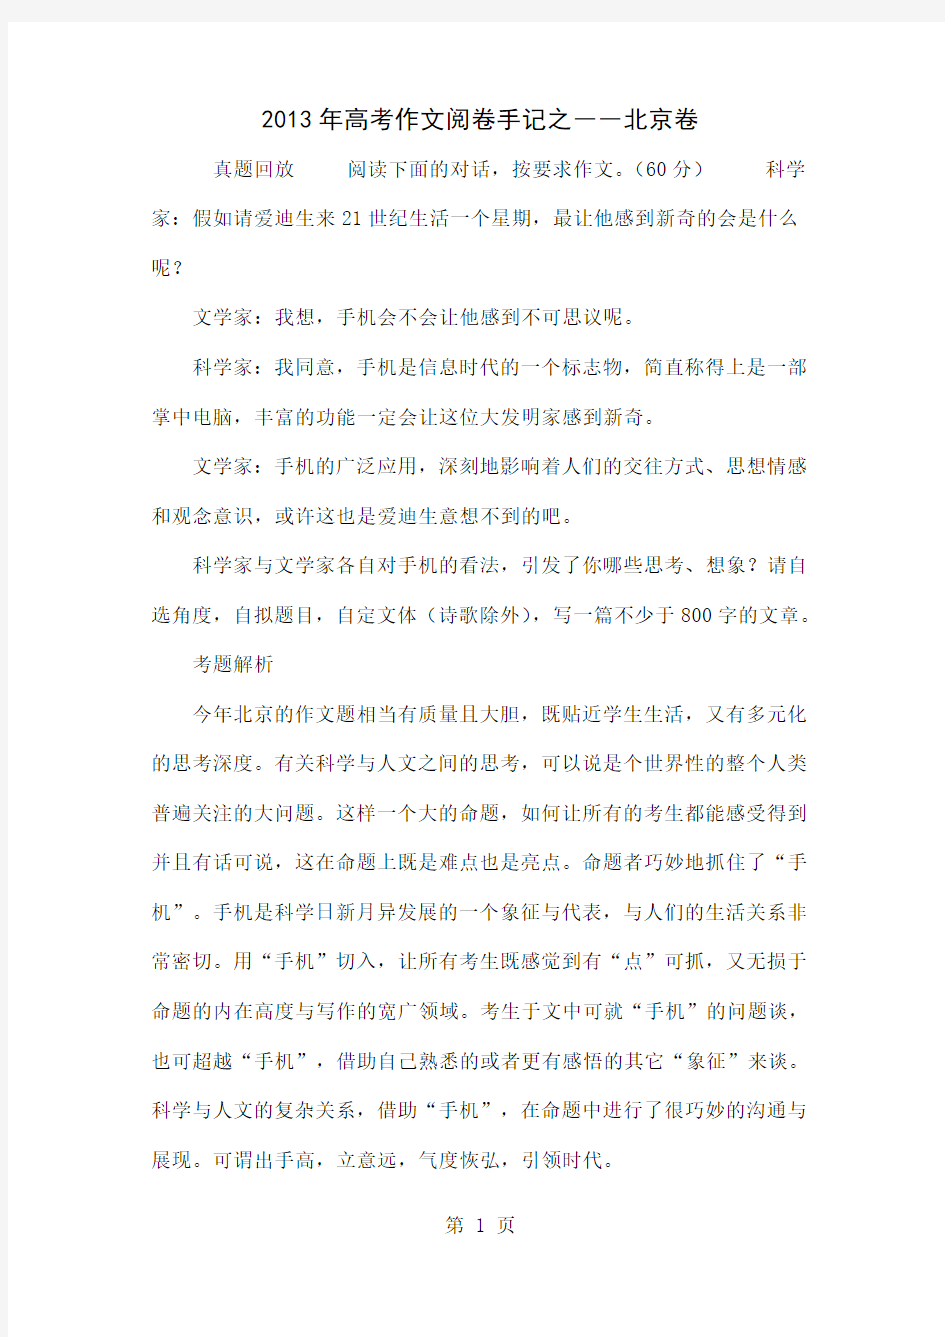 2013年高考作文阅卷手记之――北京卷共5页